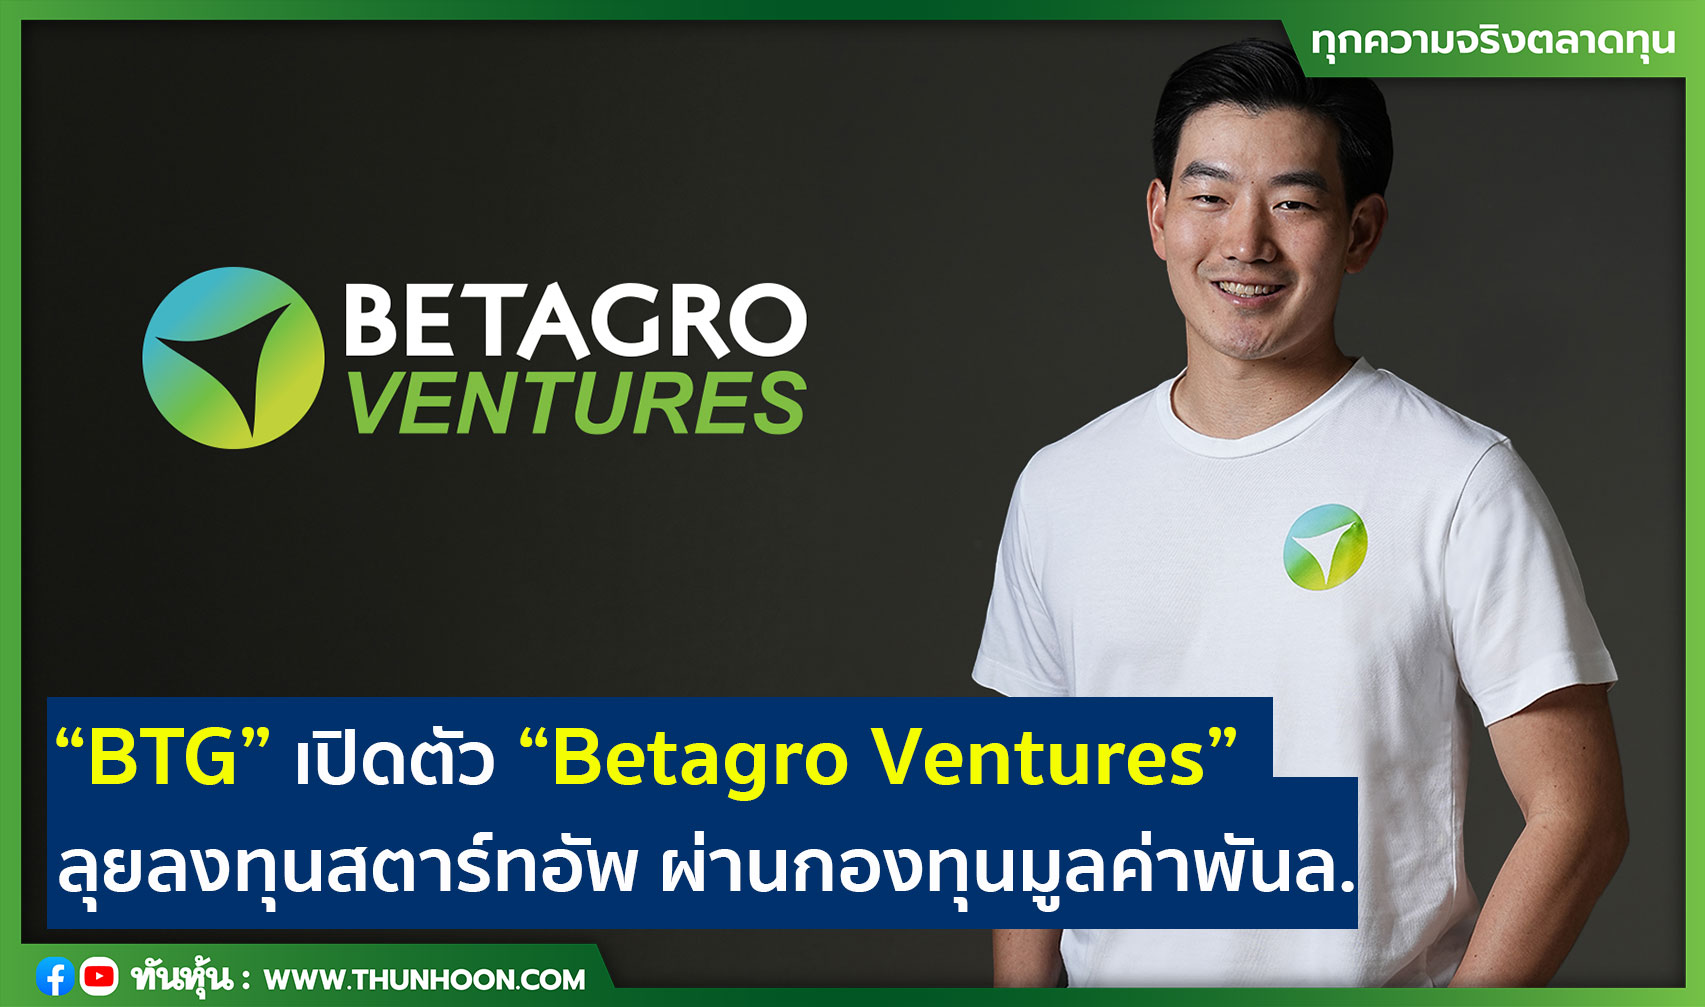 “BTG” เปิดตัว “Betagro Ventures” ลุยลงทุนสตาร์ทอัพ ผ่านกองทุนมูลค่าพันล.